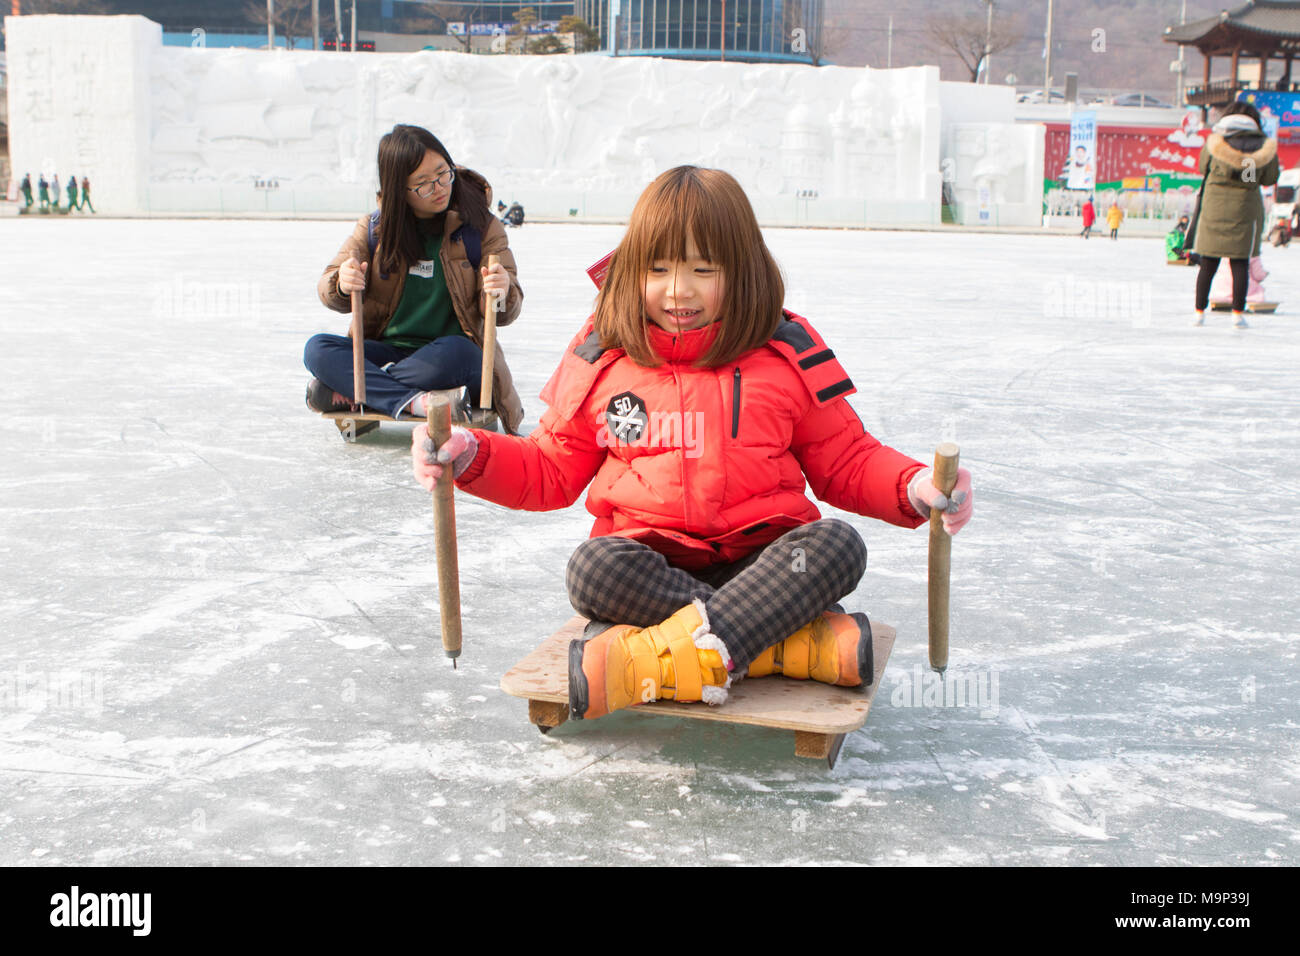 Zwei Mädchen sich nach vorn drücken, auf Schlitten an der Hwacheon Sancheoneo Ice Festival. Die Hwacheon Sancheoneo Ice Festival ist eine Tradition für die Menschen in Korea. Jedes Jahr im Januar Menschenmassen versammeln sich auf dem zugefrorenen Fluss der Kälte und dem Schnee des Winters zu feiern. Hauptattraktion ist Eisfischen. Jung und Alt warten geduldig auf ein kleines Loch im Eis für eine Forelle zu beißen. In zelten Sie können den Fisch vom Grill, nach dem sie gegessen werden. Unter anderem sind Rodeln und Eislaufen. Die in der Nähe Pyeongchang Region wird Gastgeber der Olympischen Winterspiele im Februar 2018. Stockfoto